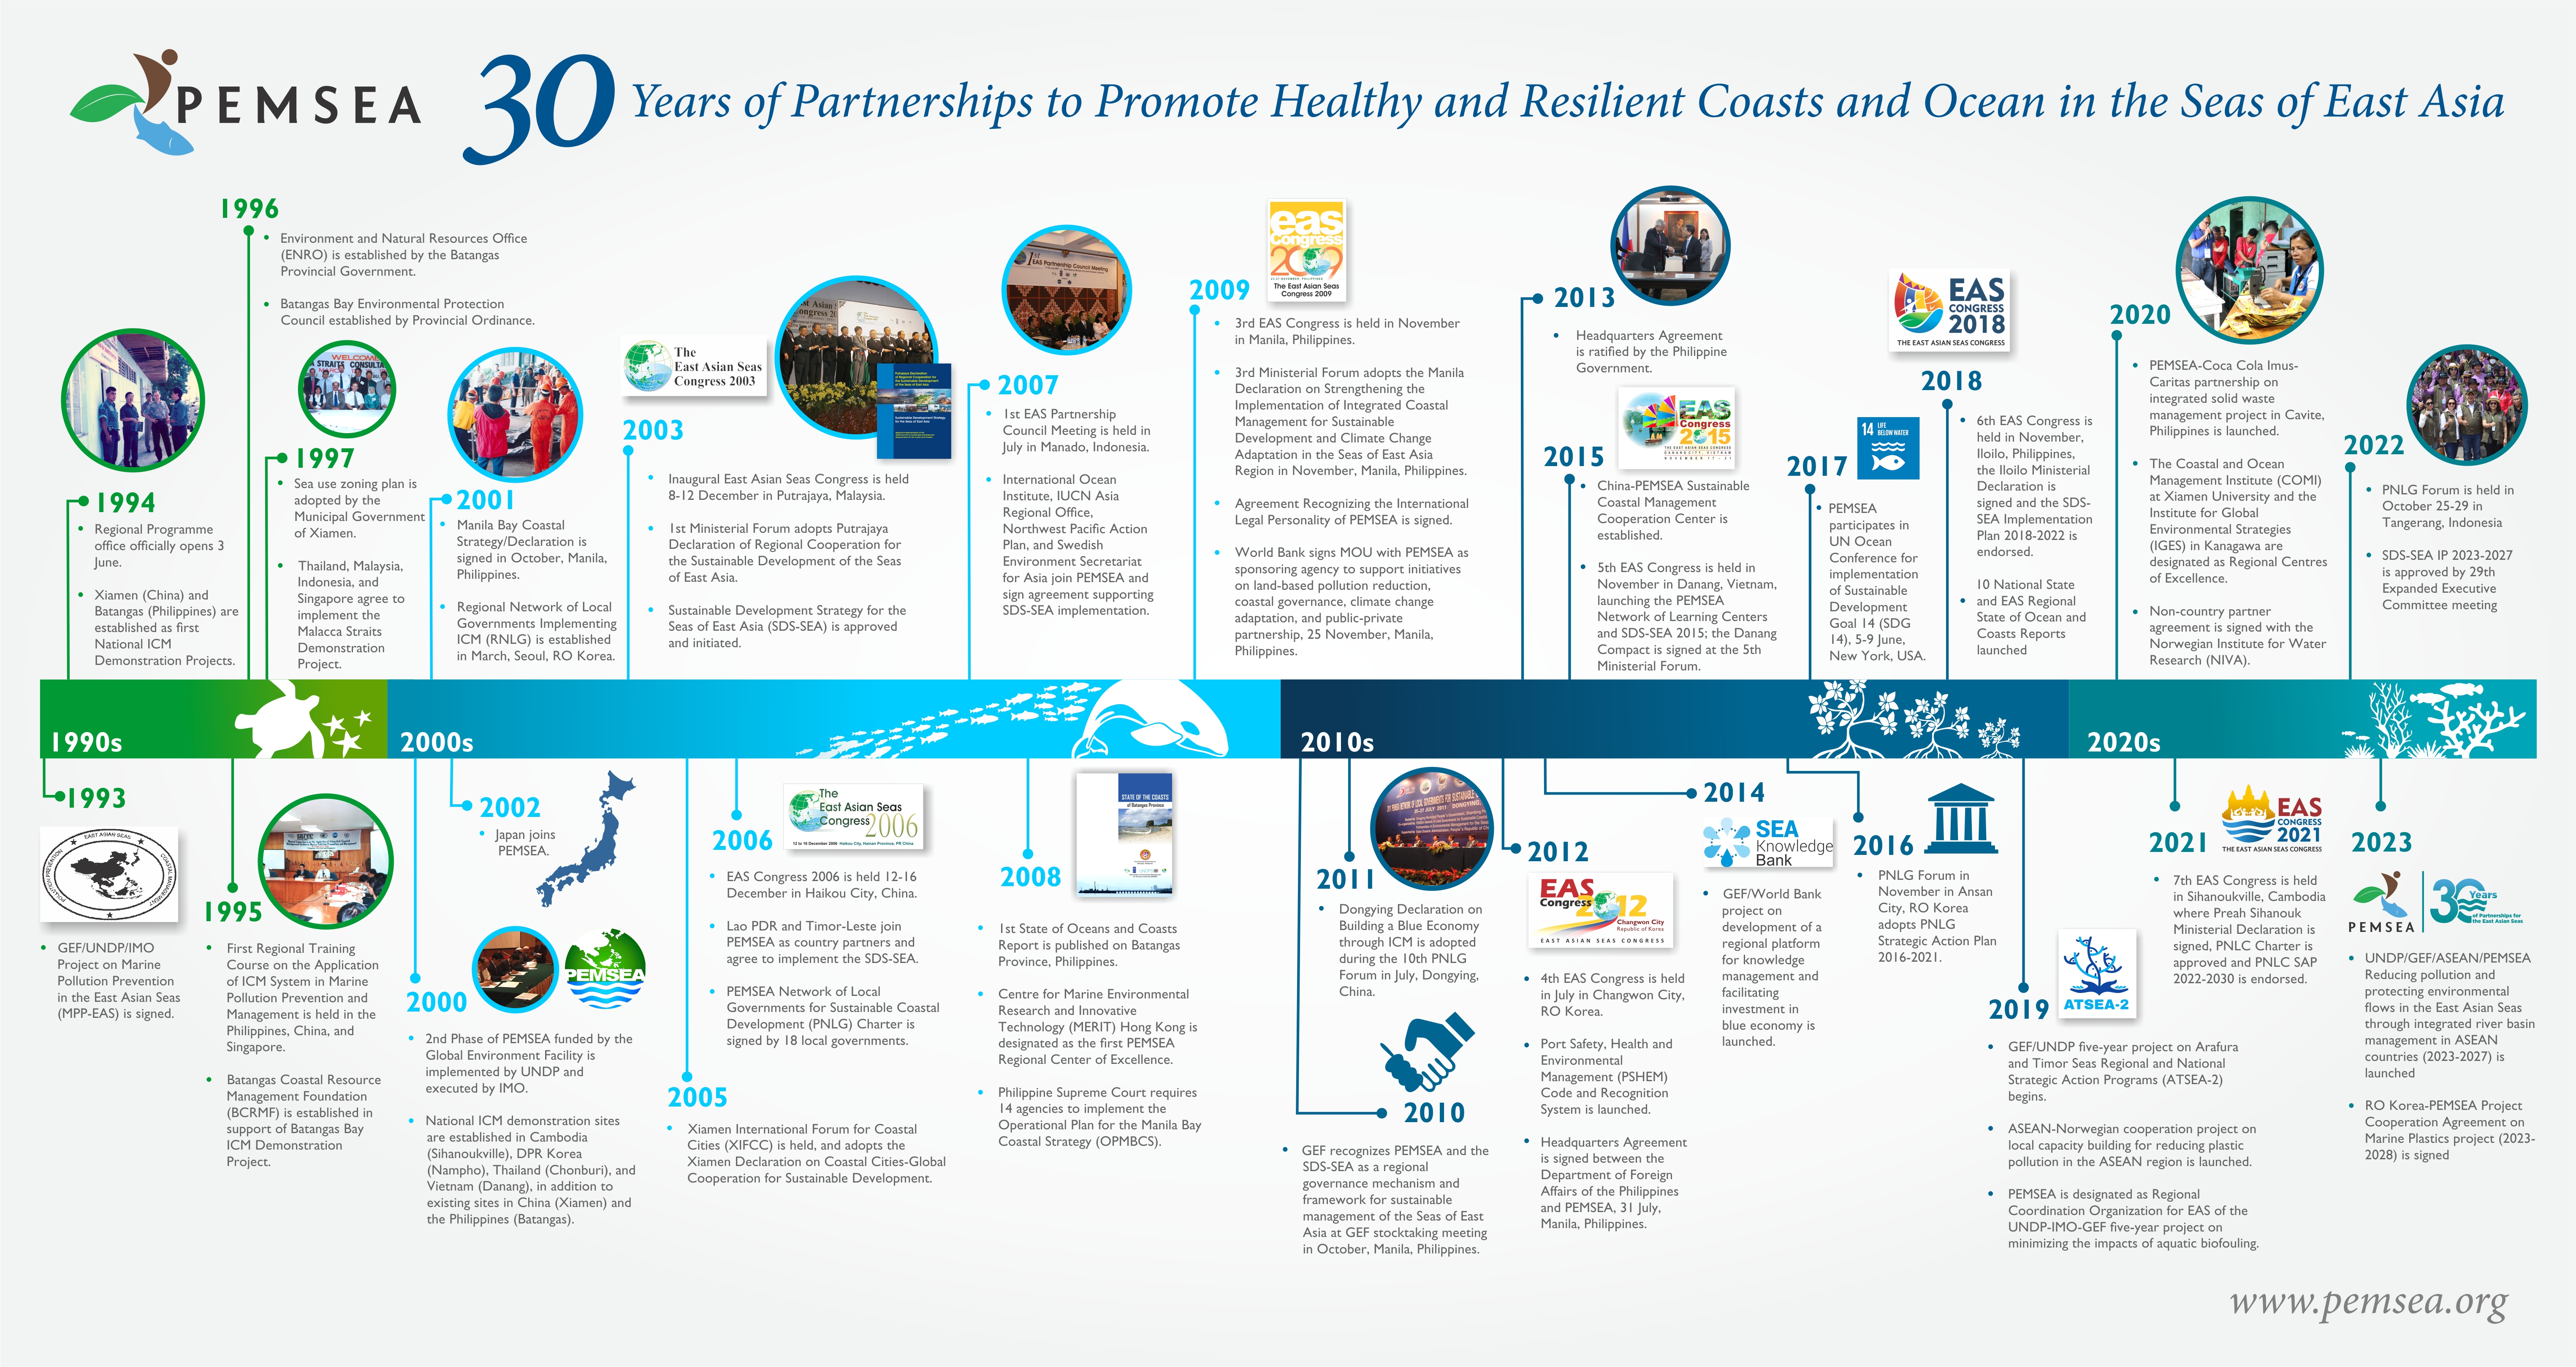 PEMSEA 30 Year Anniversary Infographic